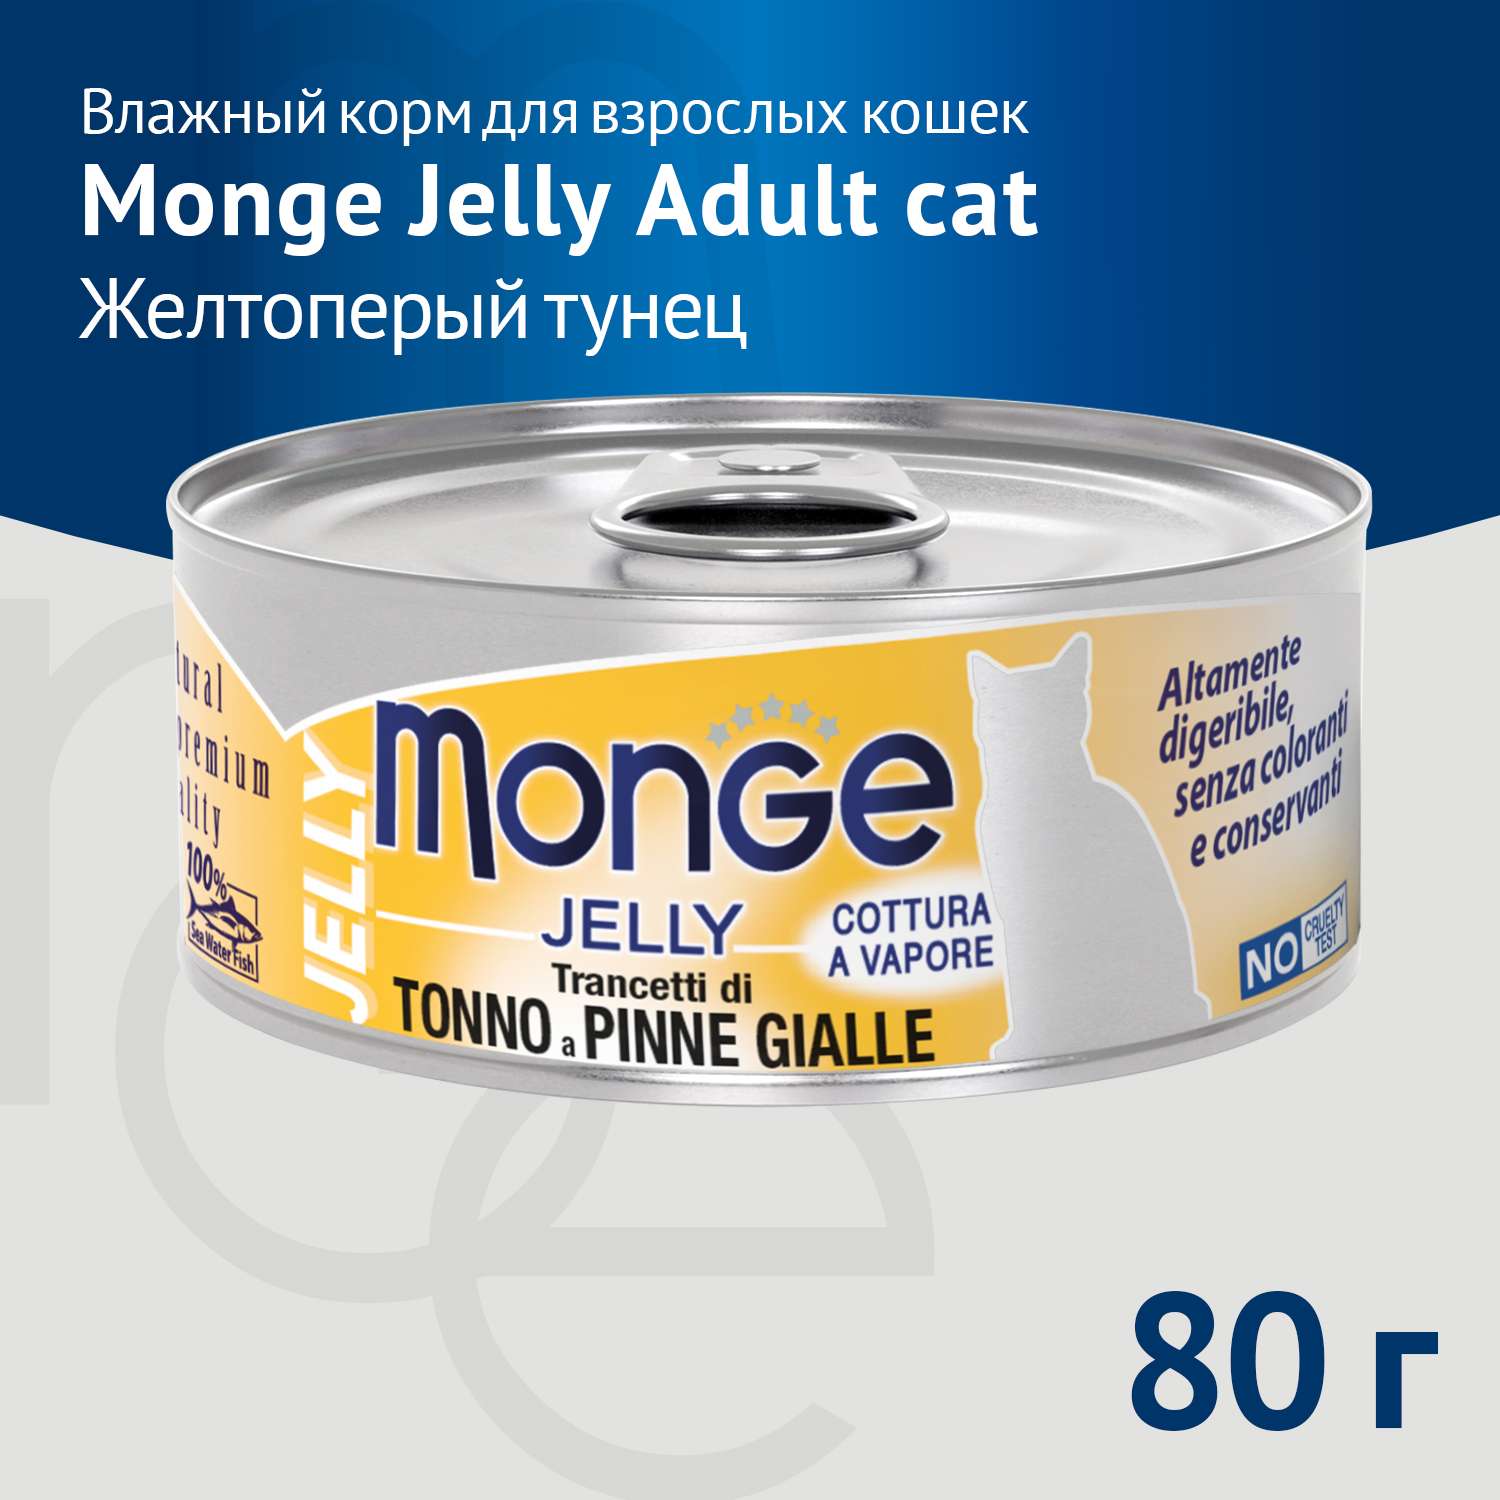 Корм для кошек Monge 80г с желтоперым тунцом консервы - фото 3